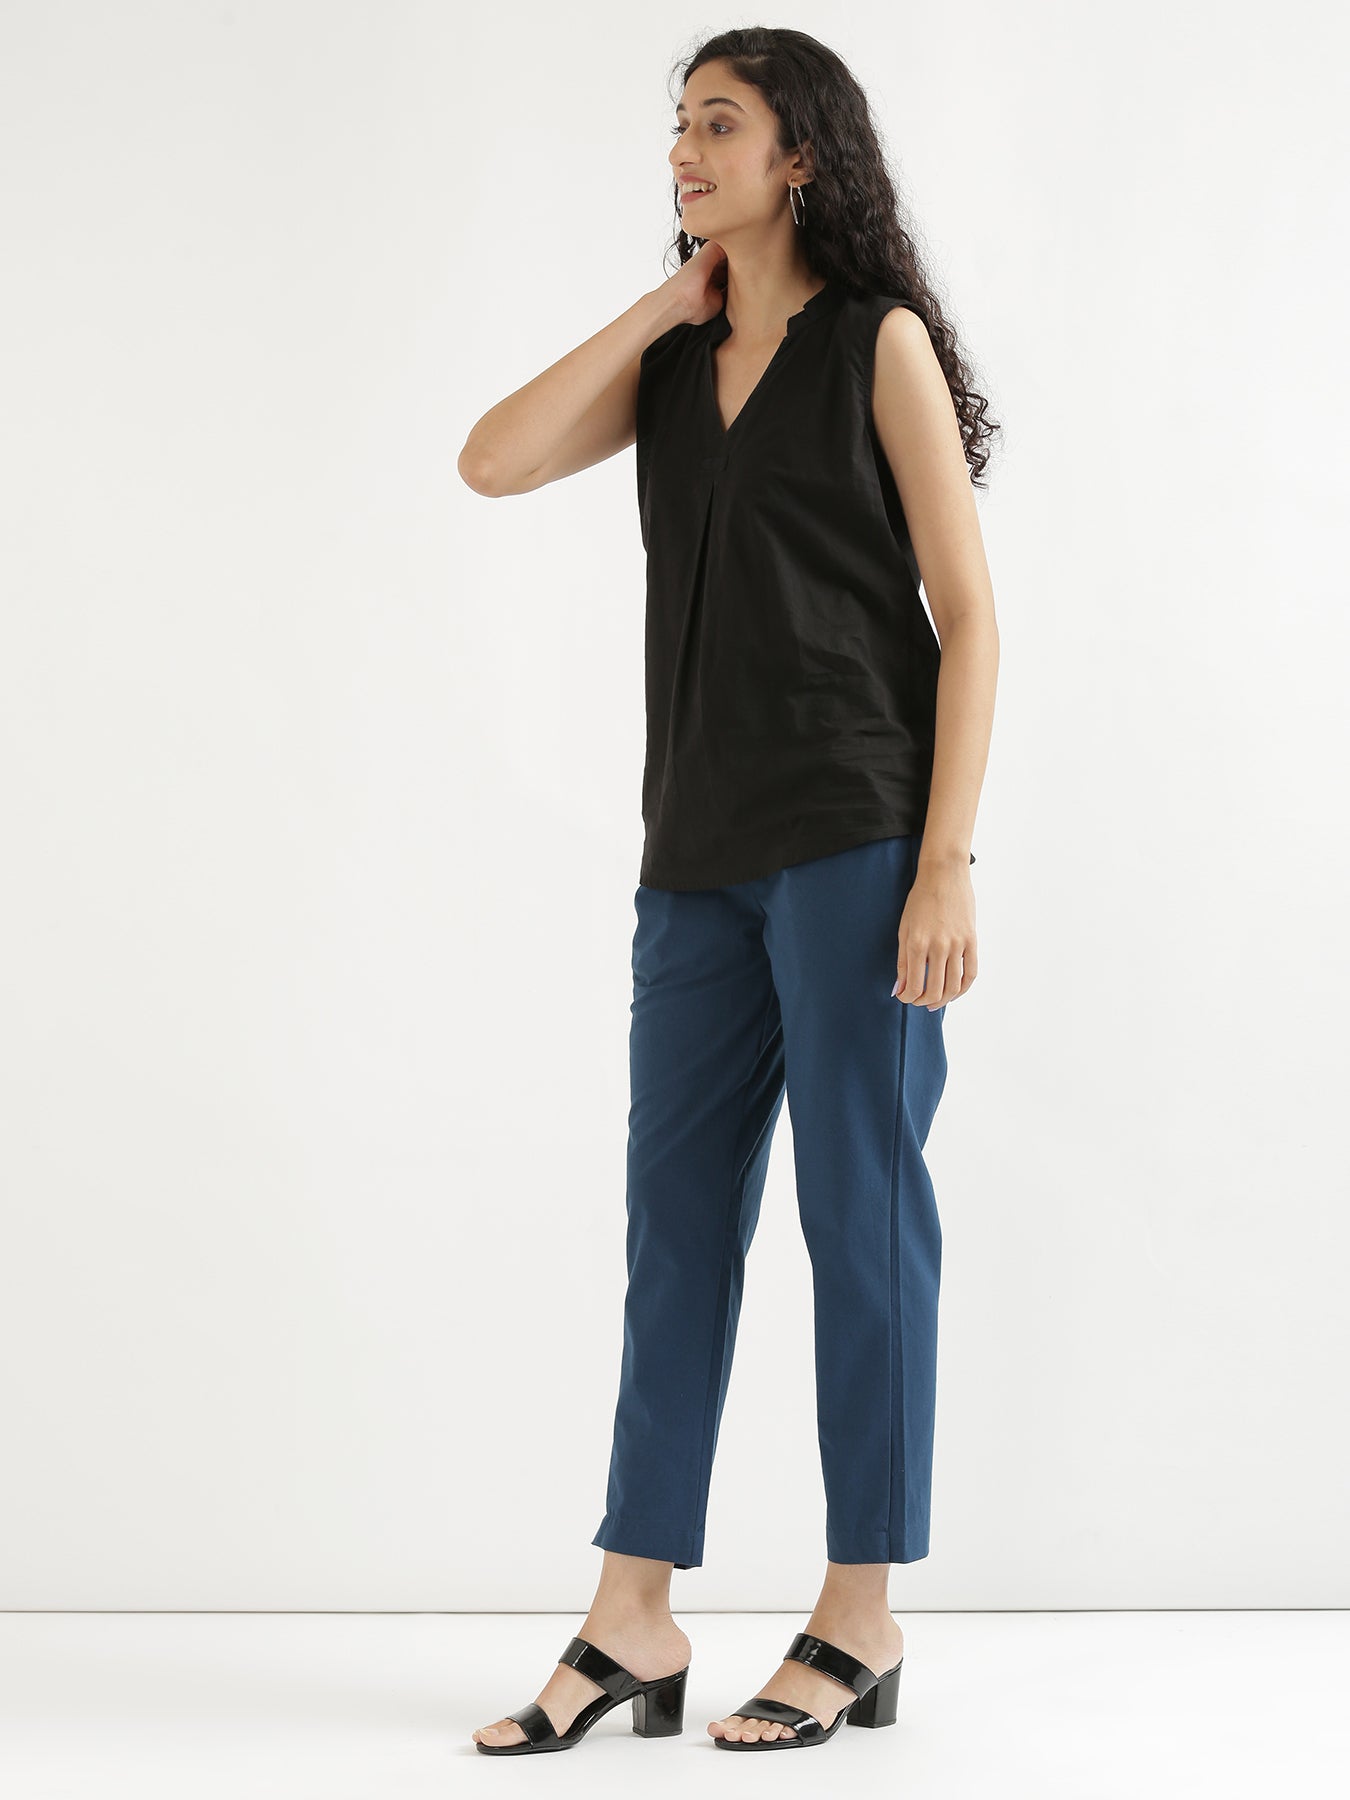 KELLO Women Grey Regular Straight Fit Trousers Size EUR 44 UK 18 W34 | eBay